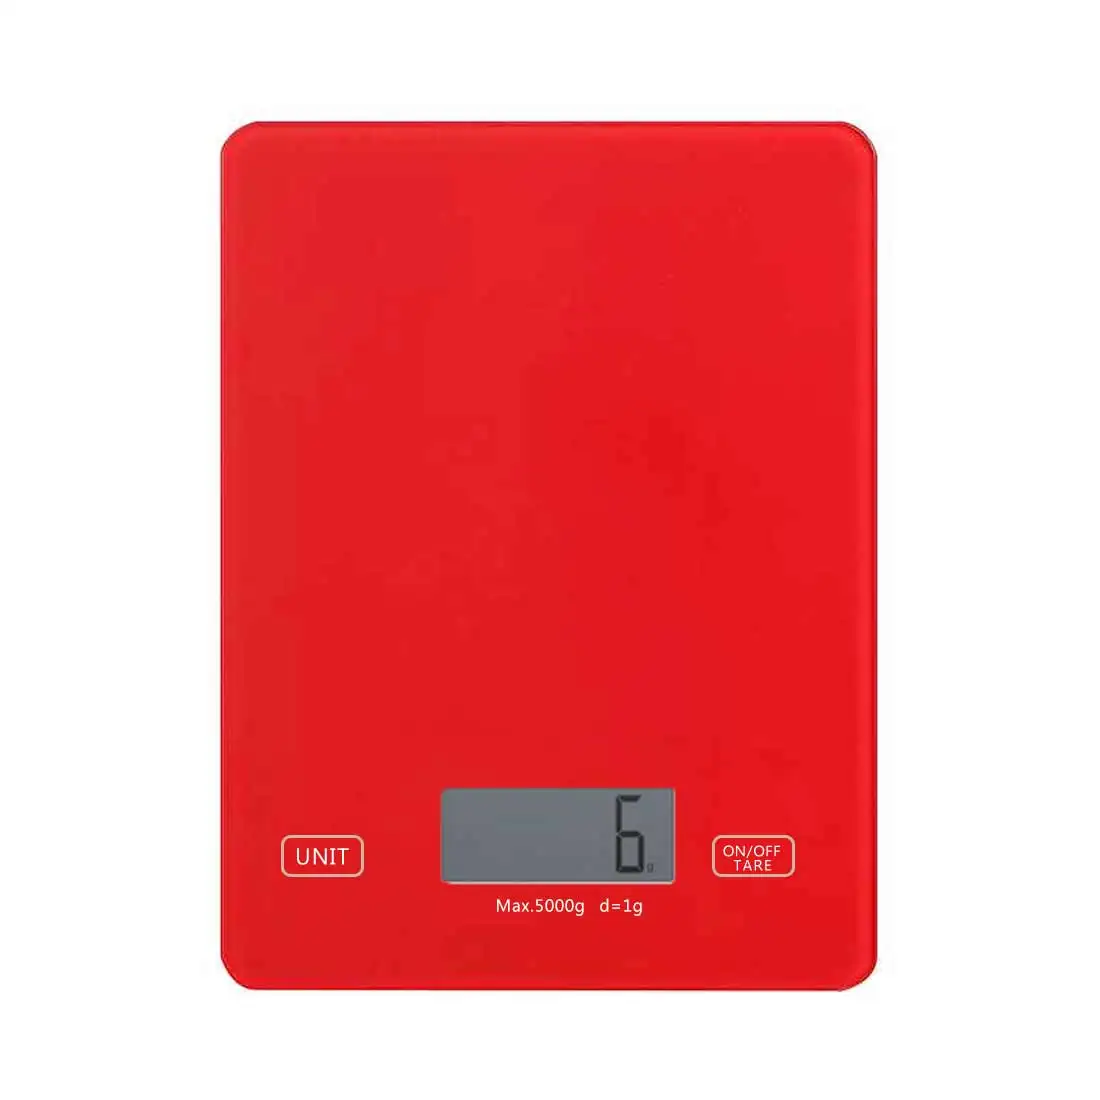 5 кг/1 г кухонные весы портативные мини Цифровые высокоточные весы для приготовления пищи и чая Электронные карманные профессиональные весы машины - Цвет: Красный